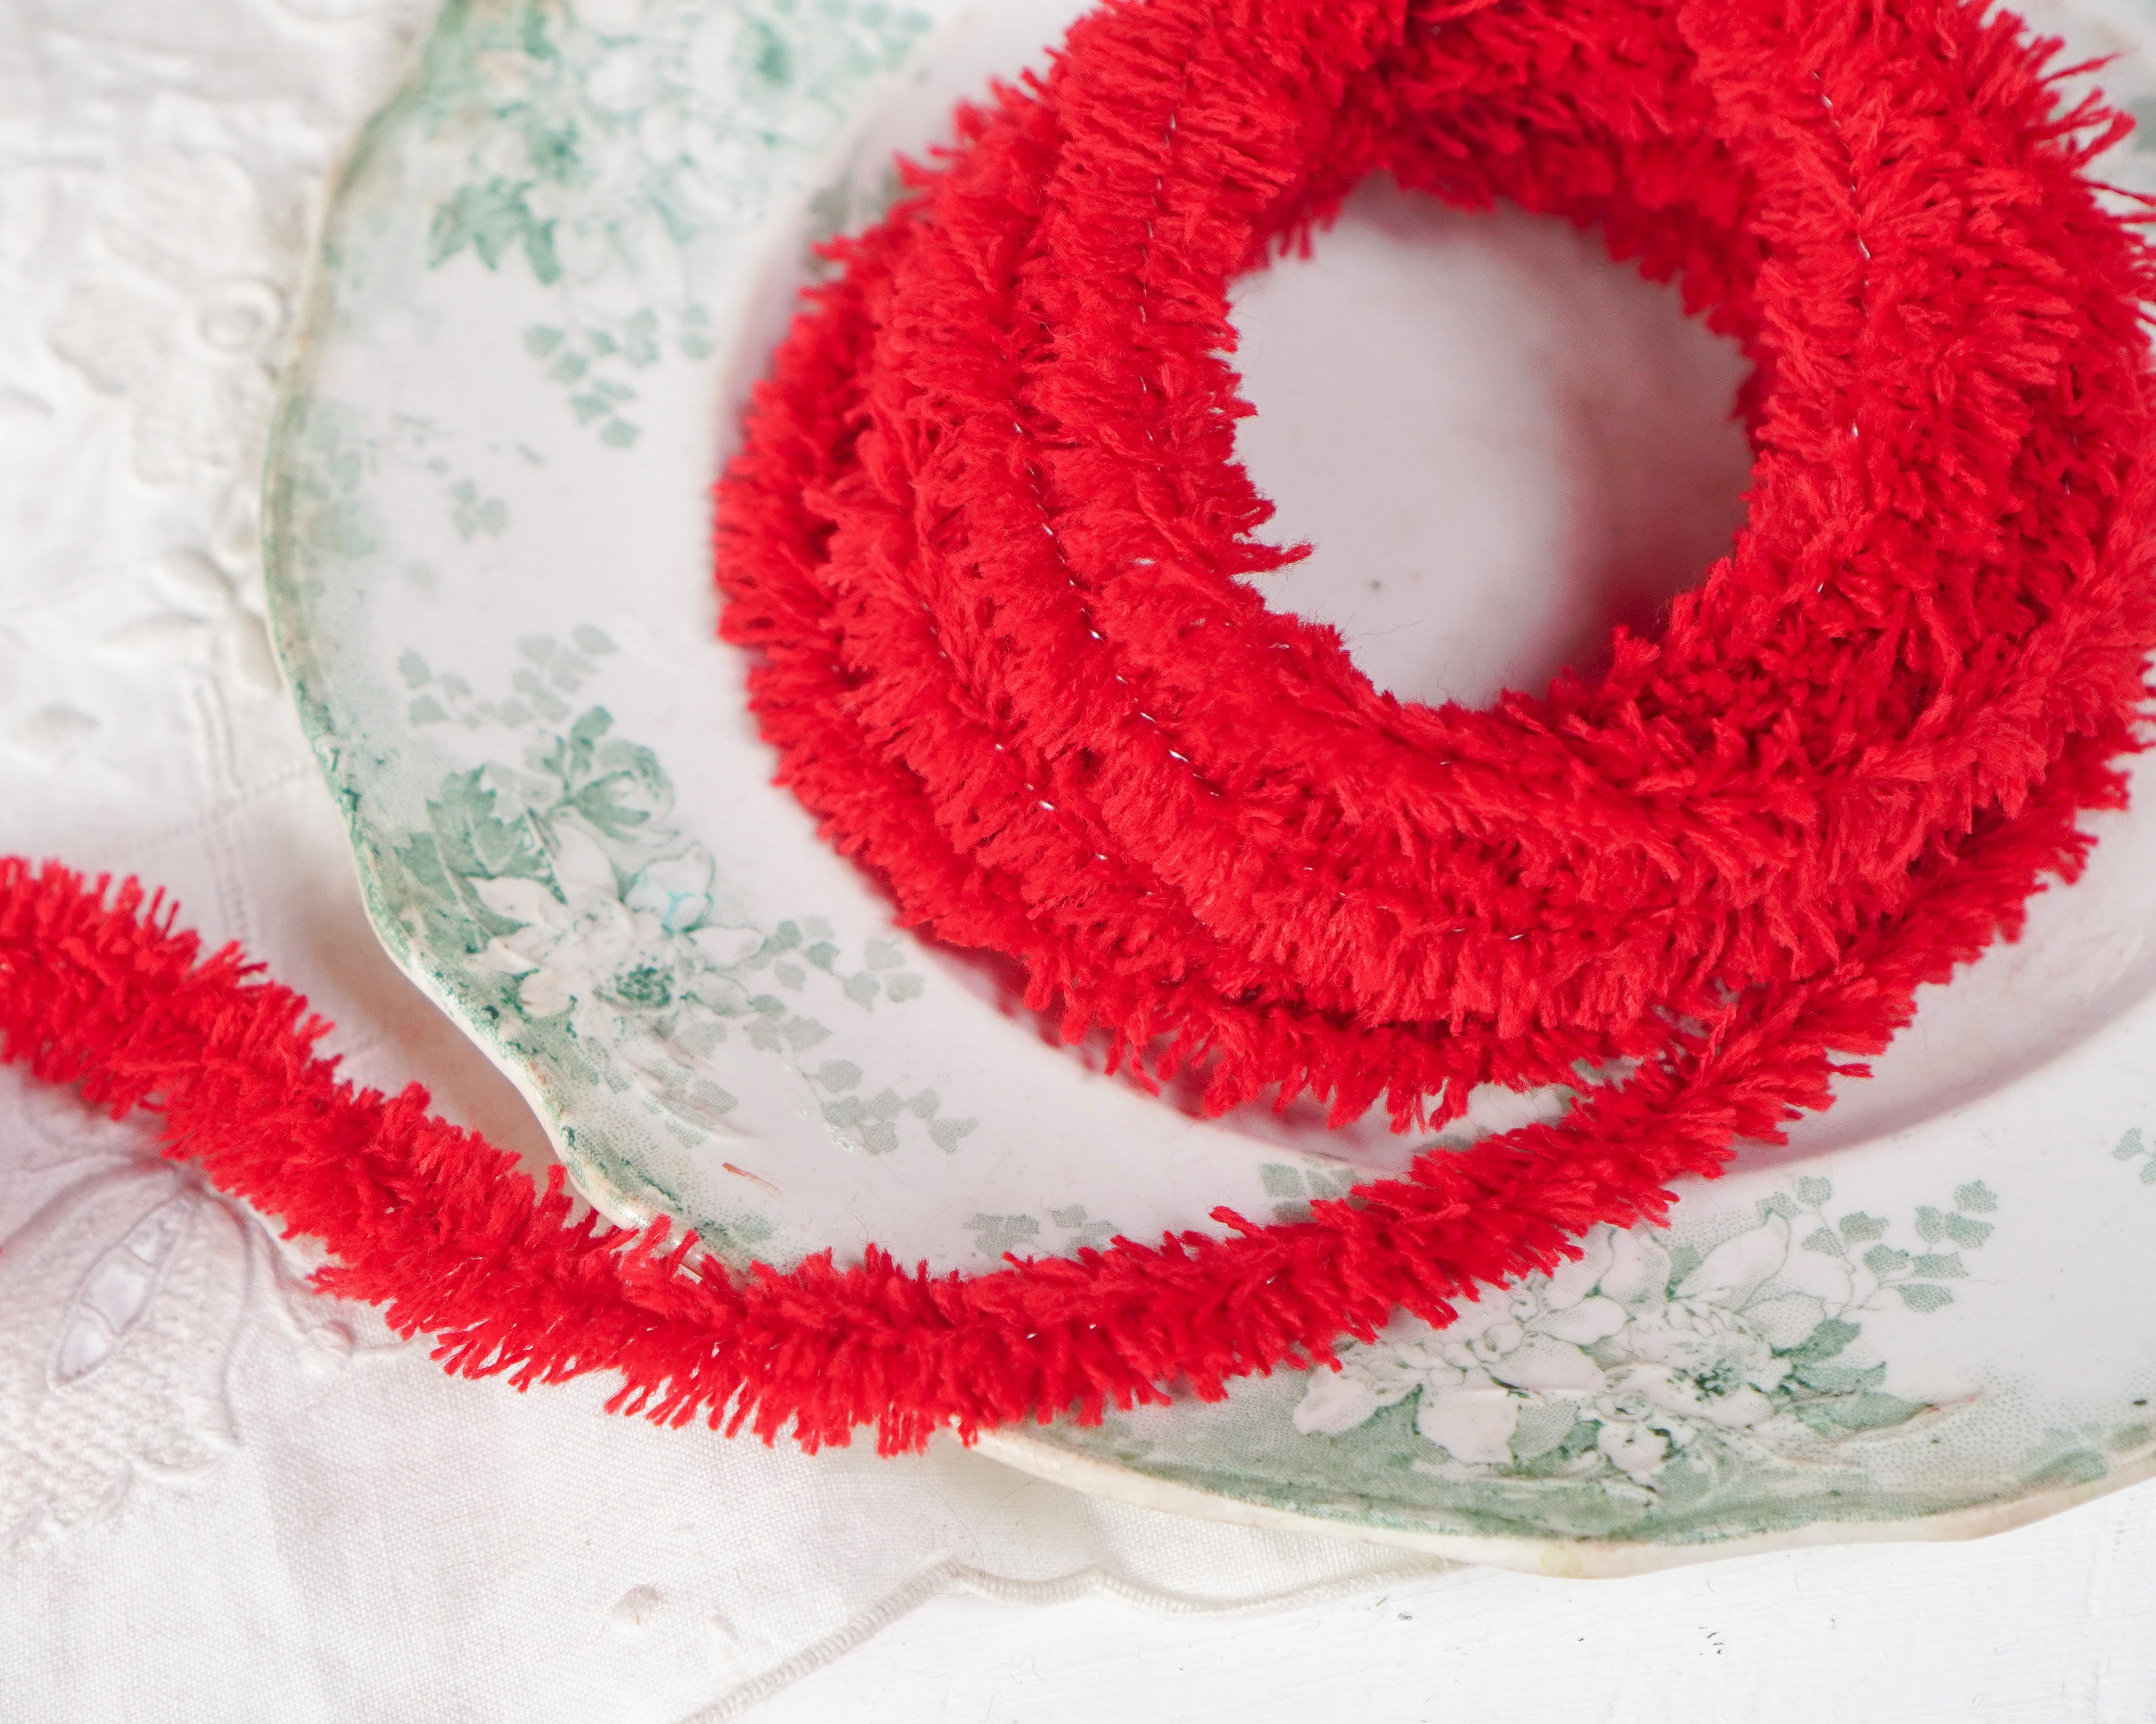 Wired Yarn Trim - Fluffy Christmas Red Yarn Fur Craft Cord, 3 Yds